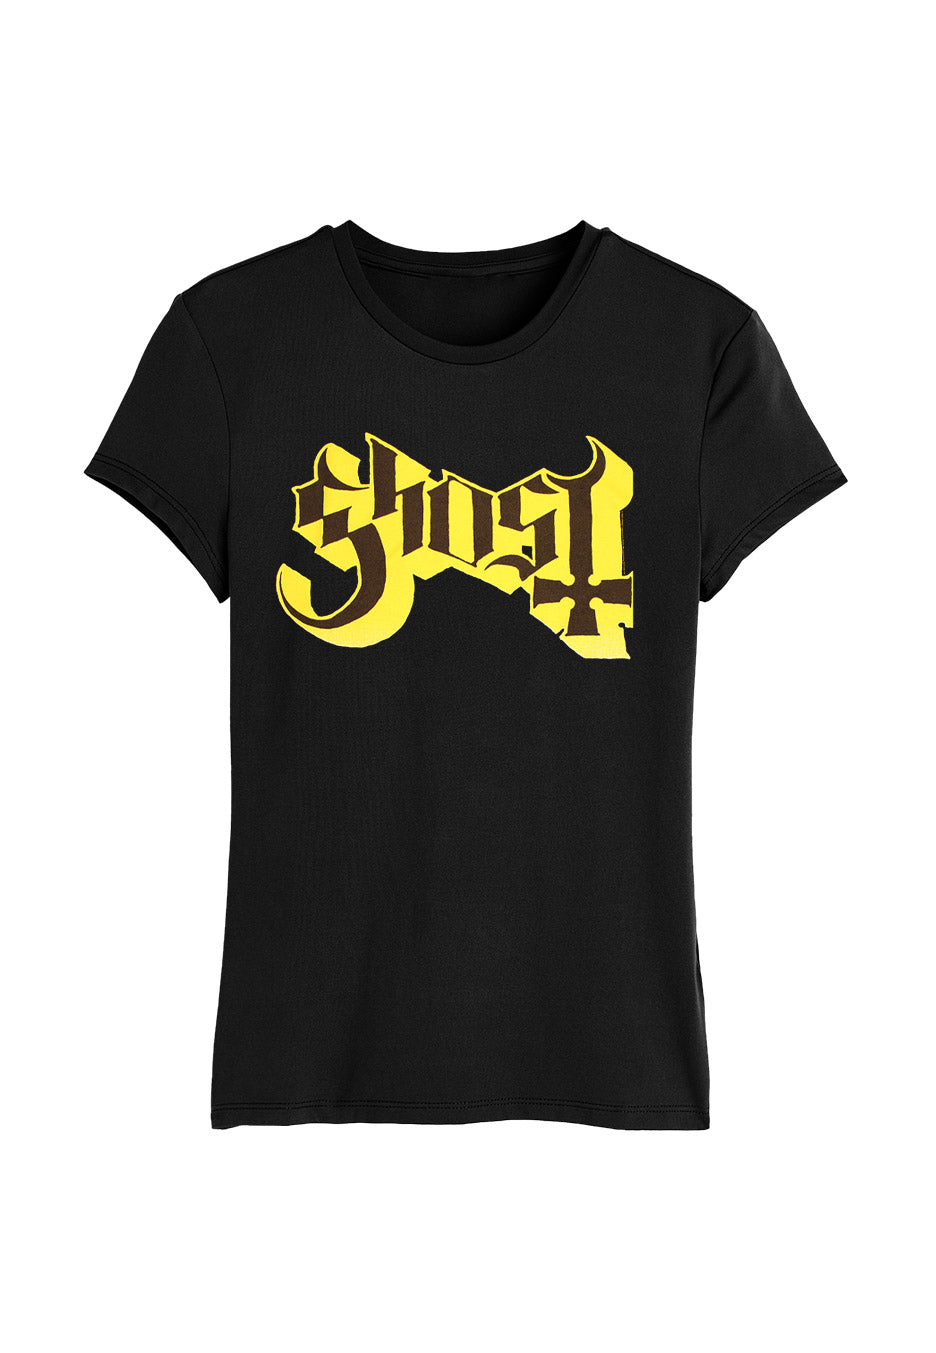 Ghost - Logo - Girly